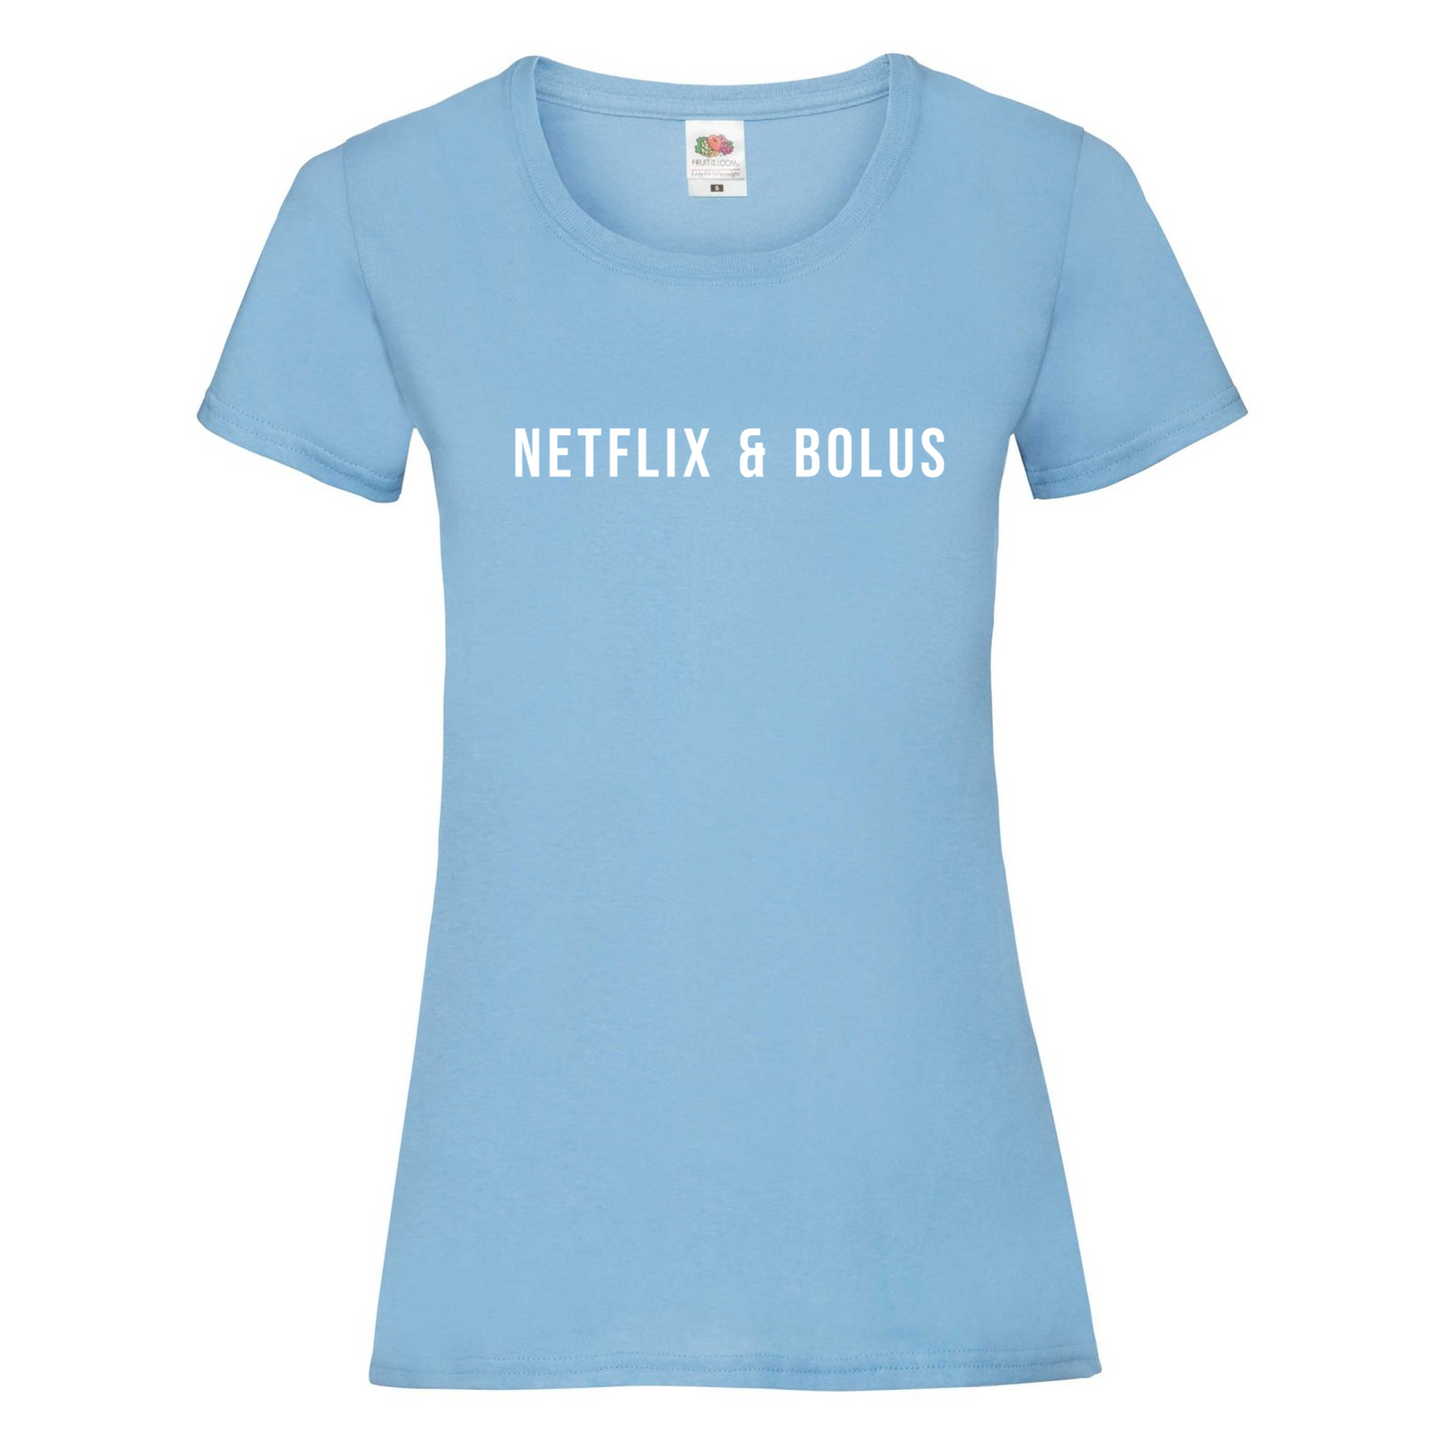 Netflix & Bolus Women's T Shirt